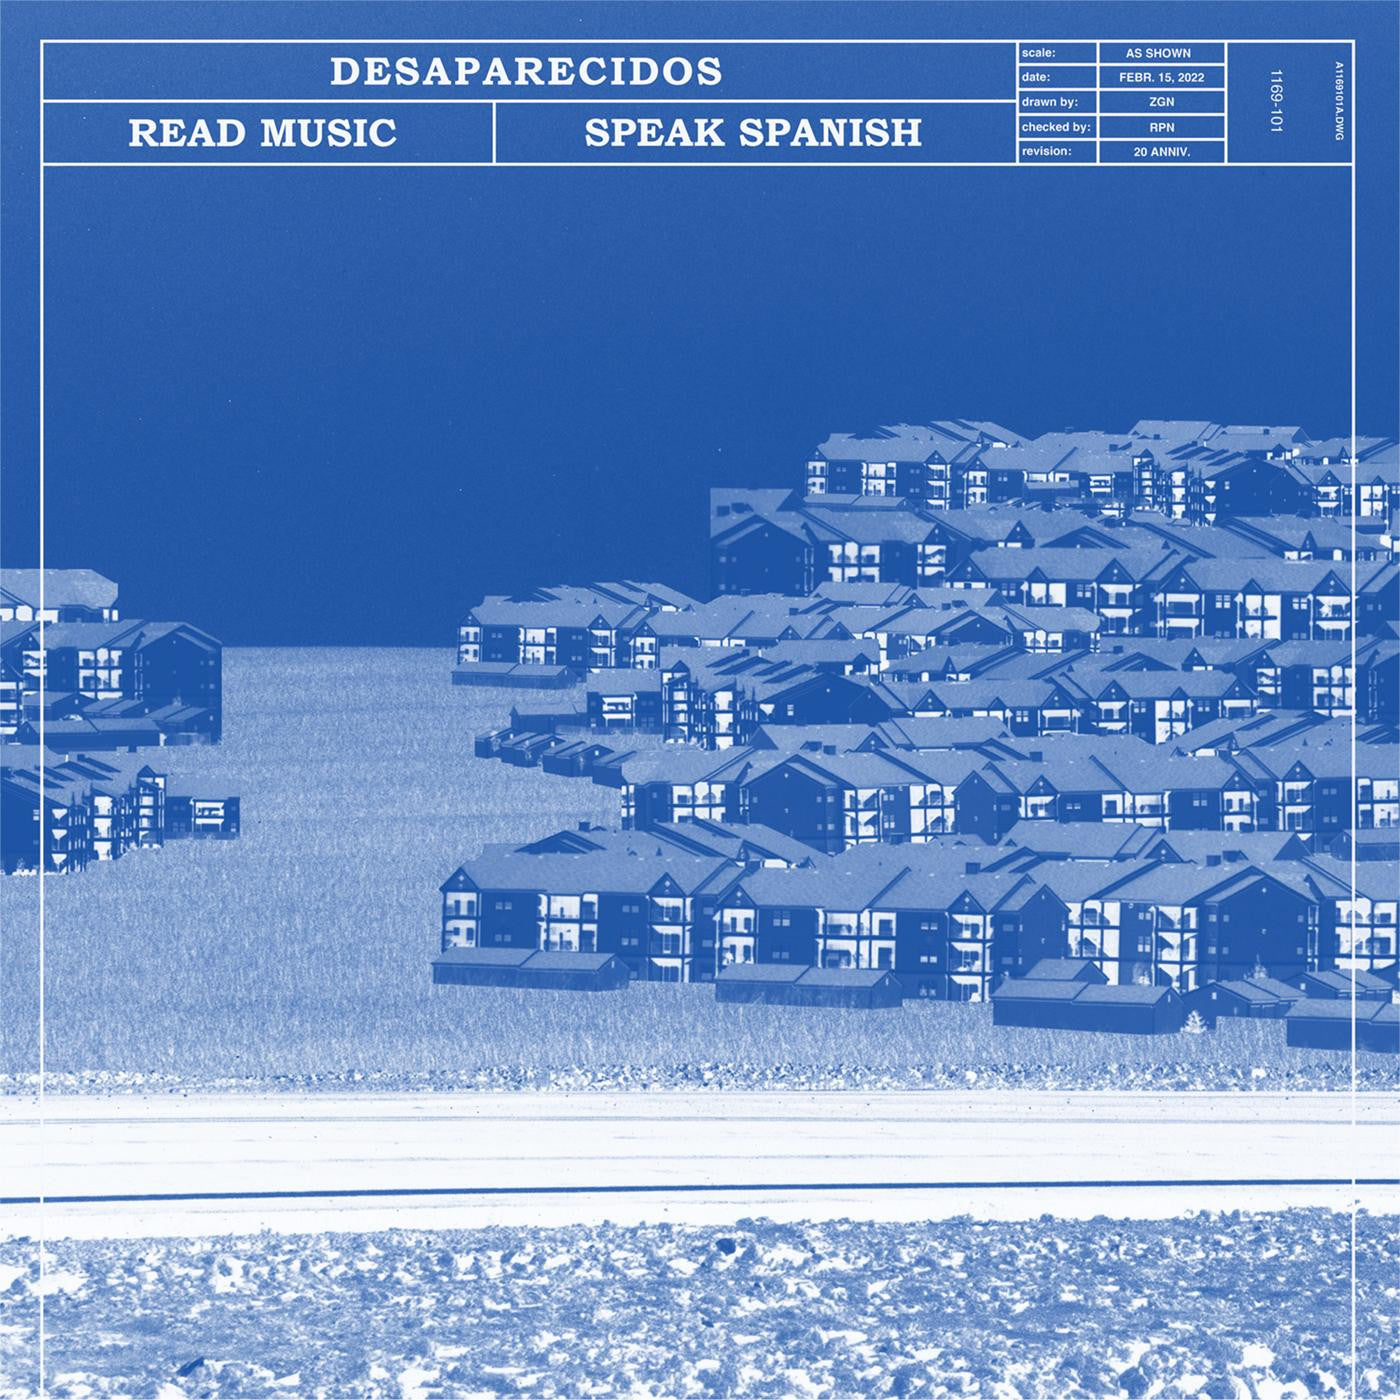 DESAPARECIDOS - READ MUSIC SPEAK SPANISH Vinyl LP